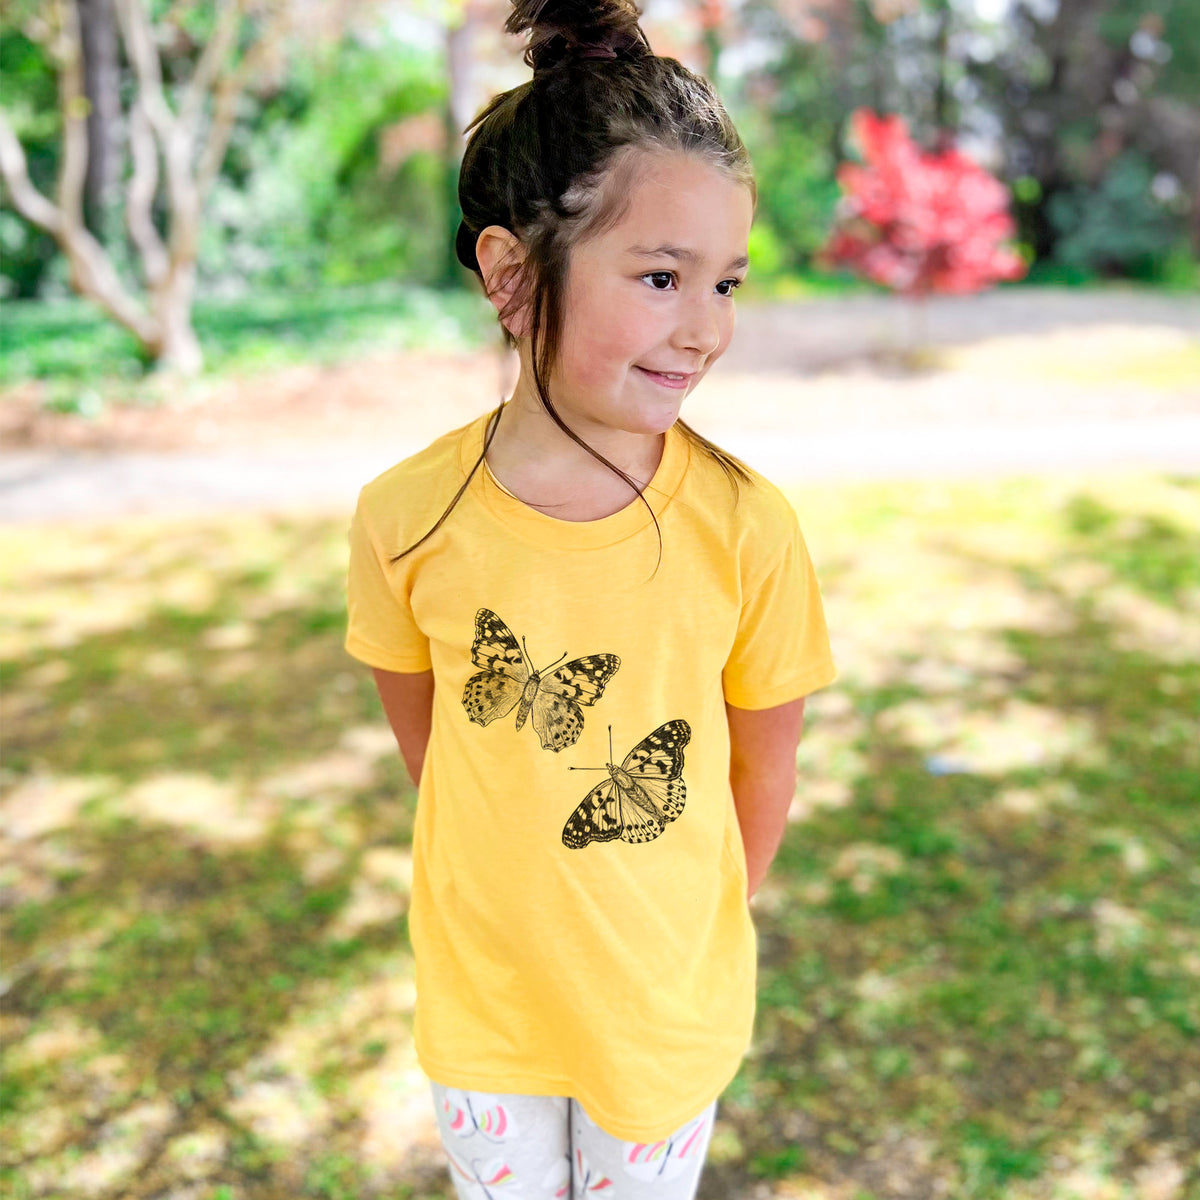 Painted Lady Butterflies - Kids Shirt